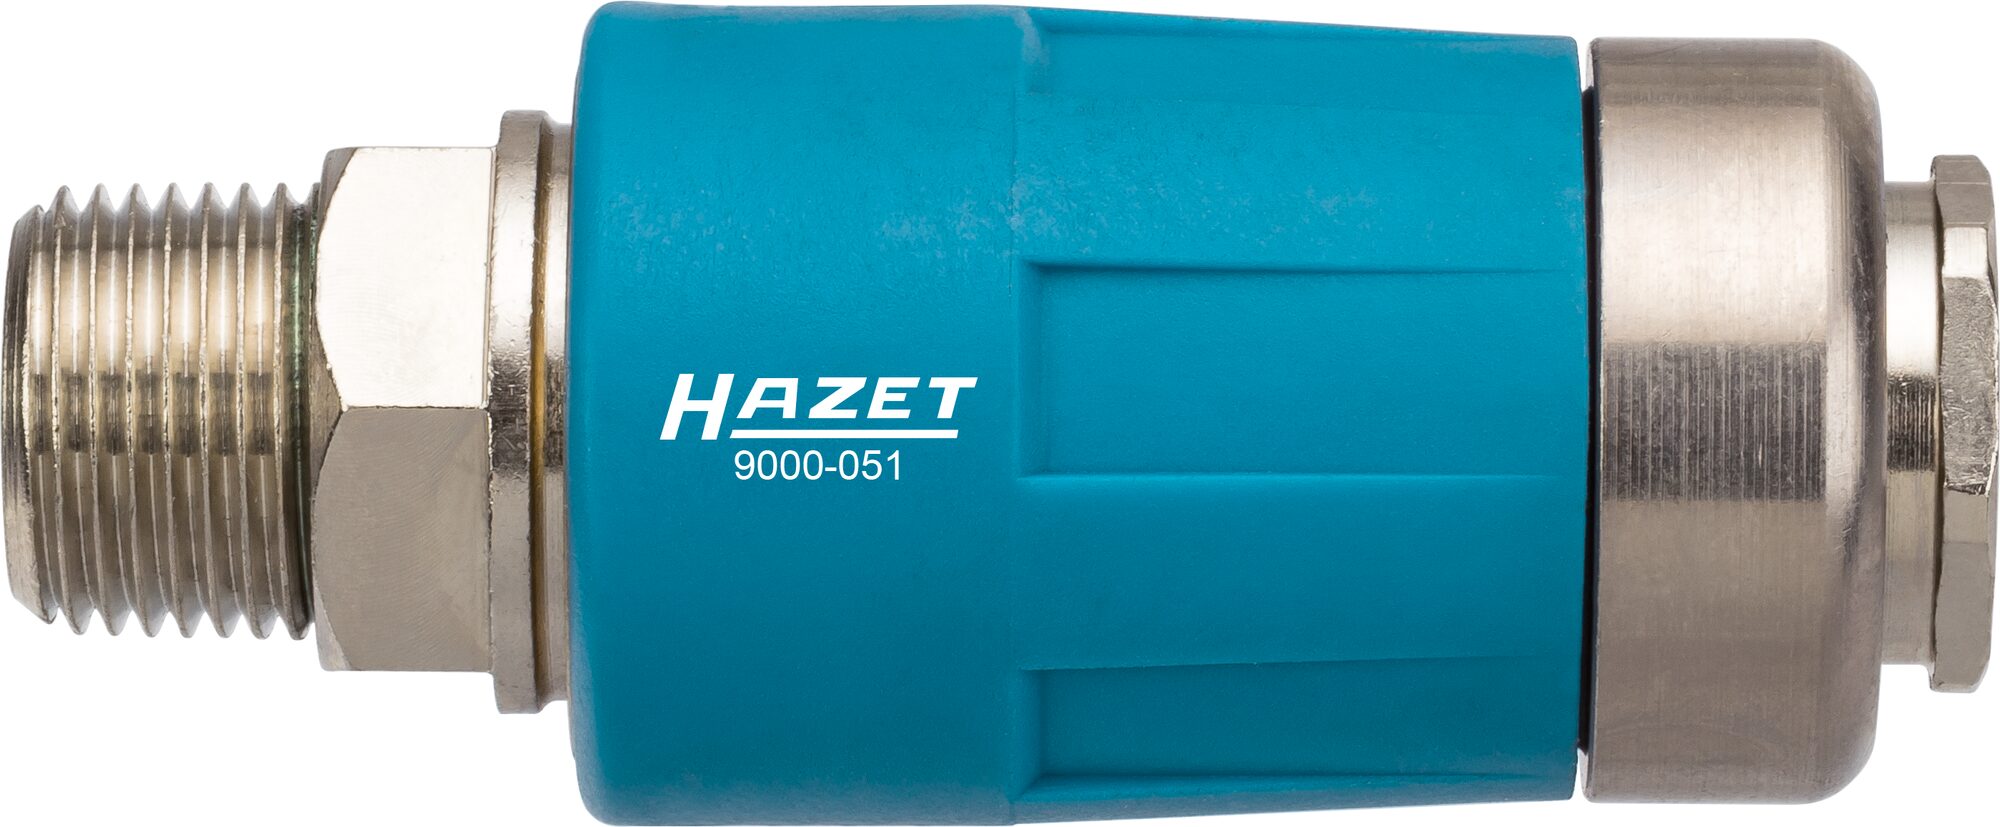 HAZET Sicherheits Kupplung 9000-051